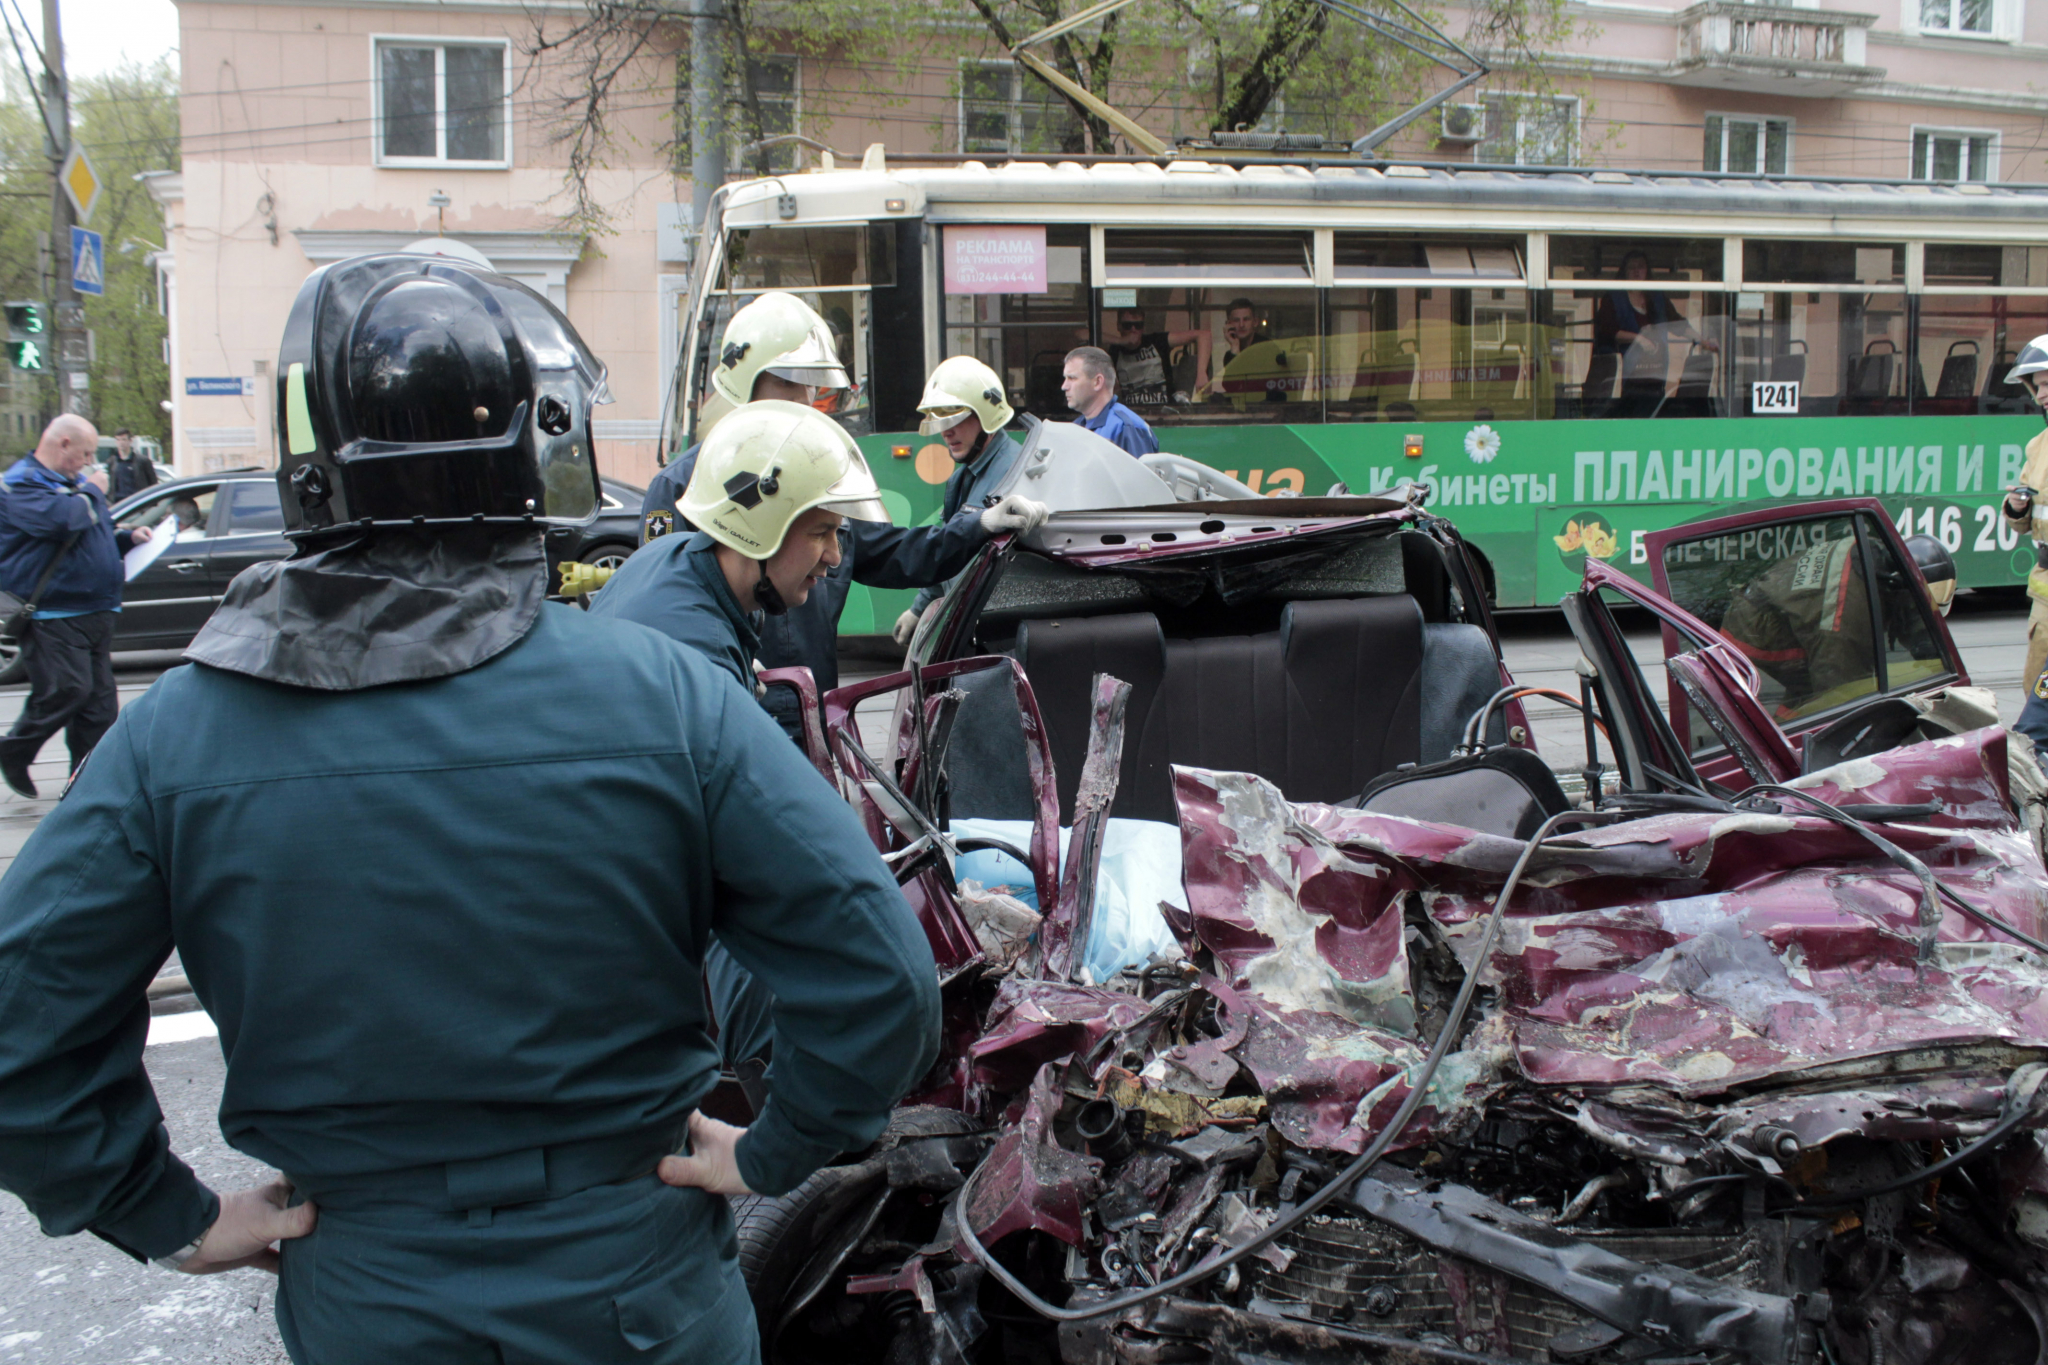 Три способа избежать аварий в Нижнем Новгороде